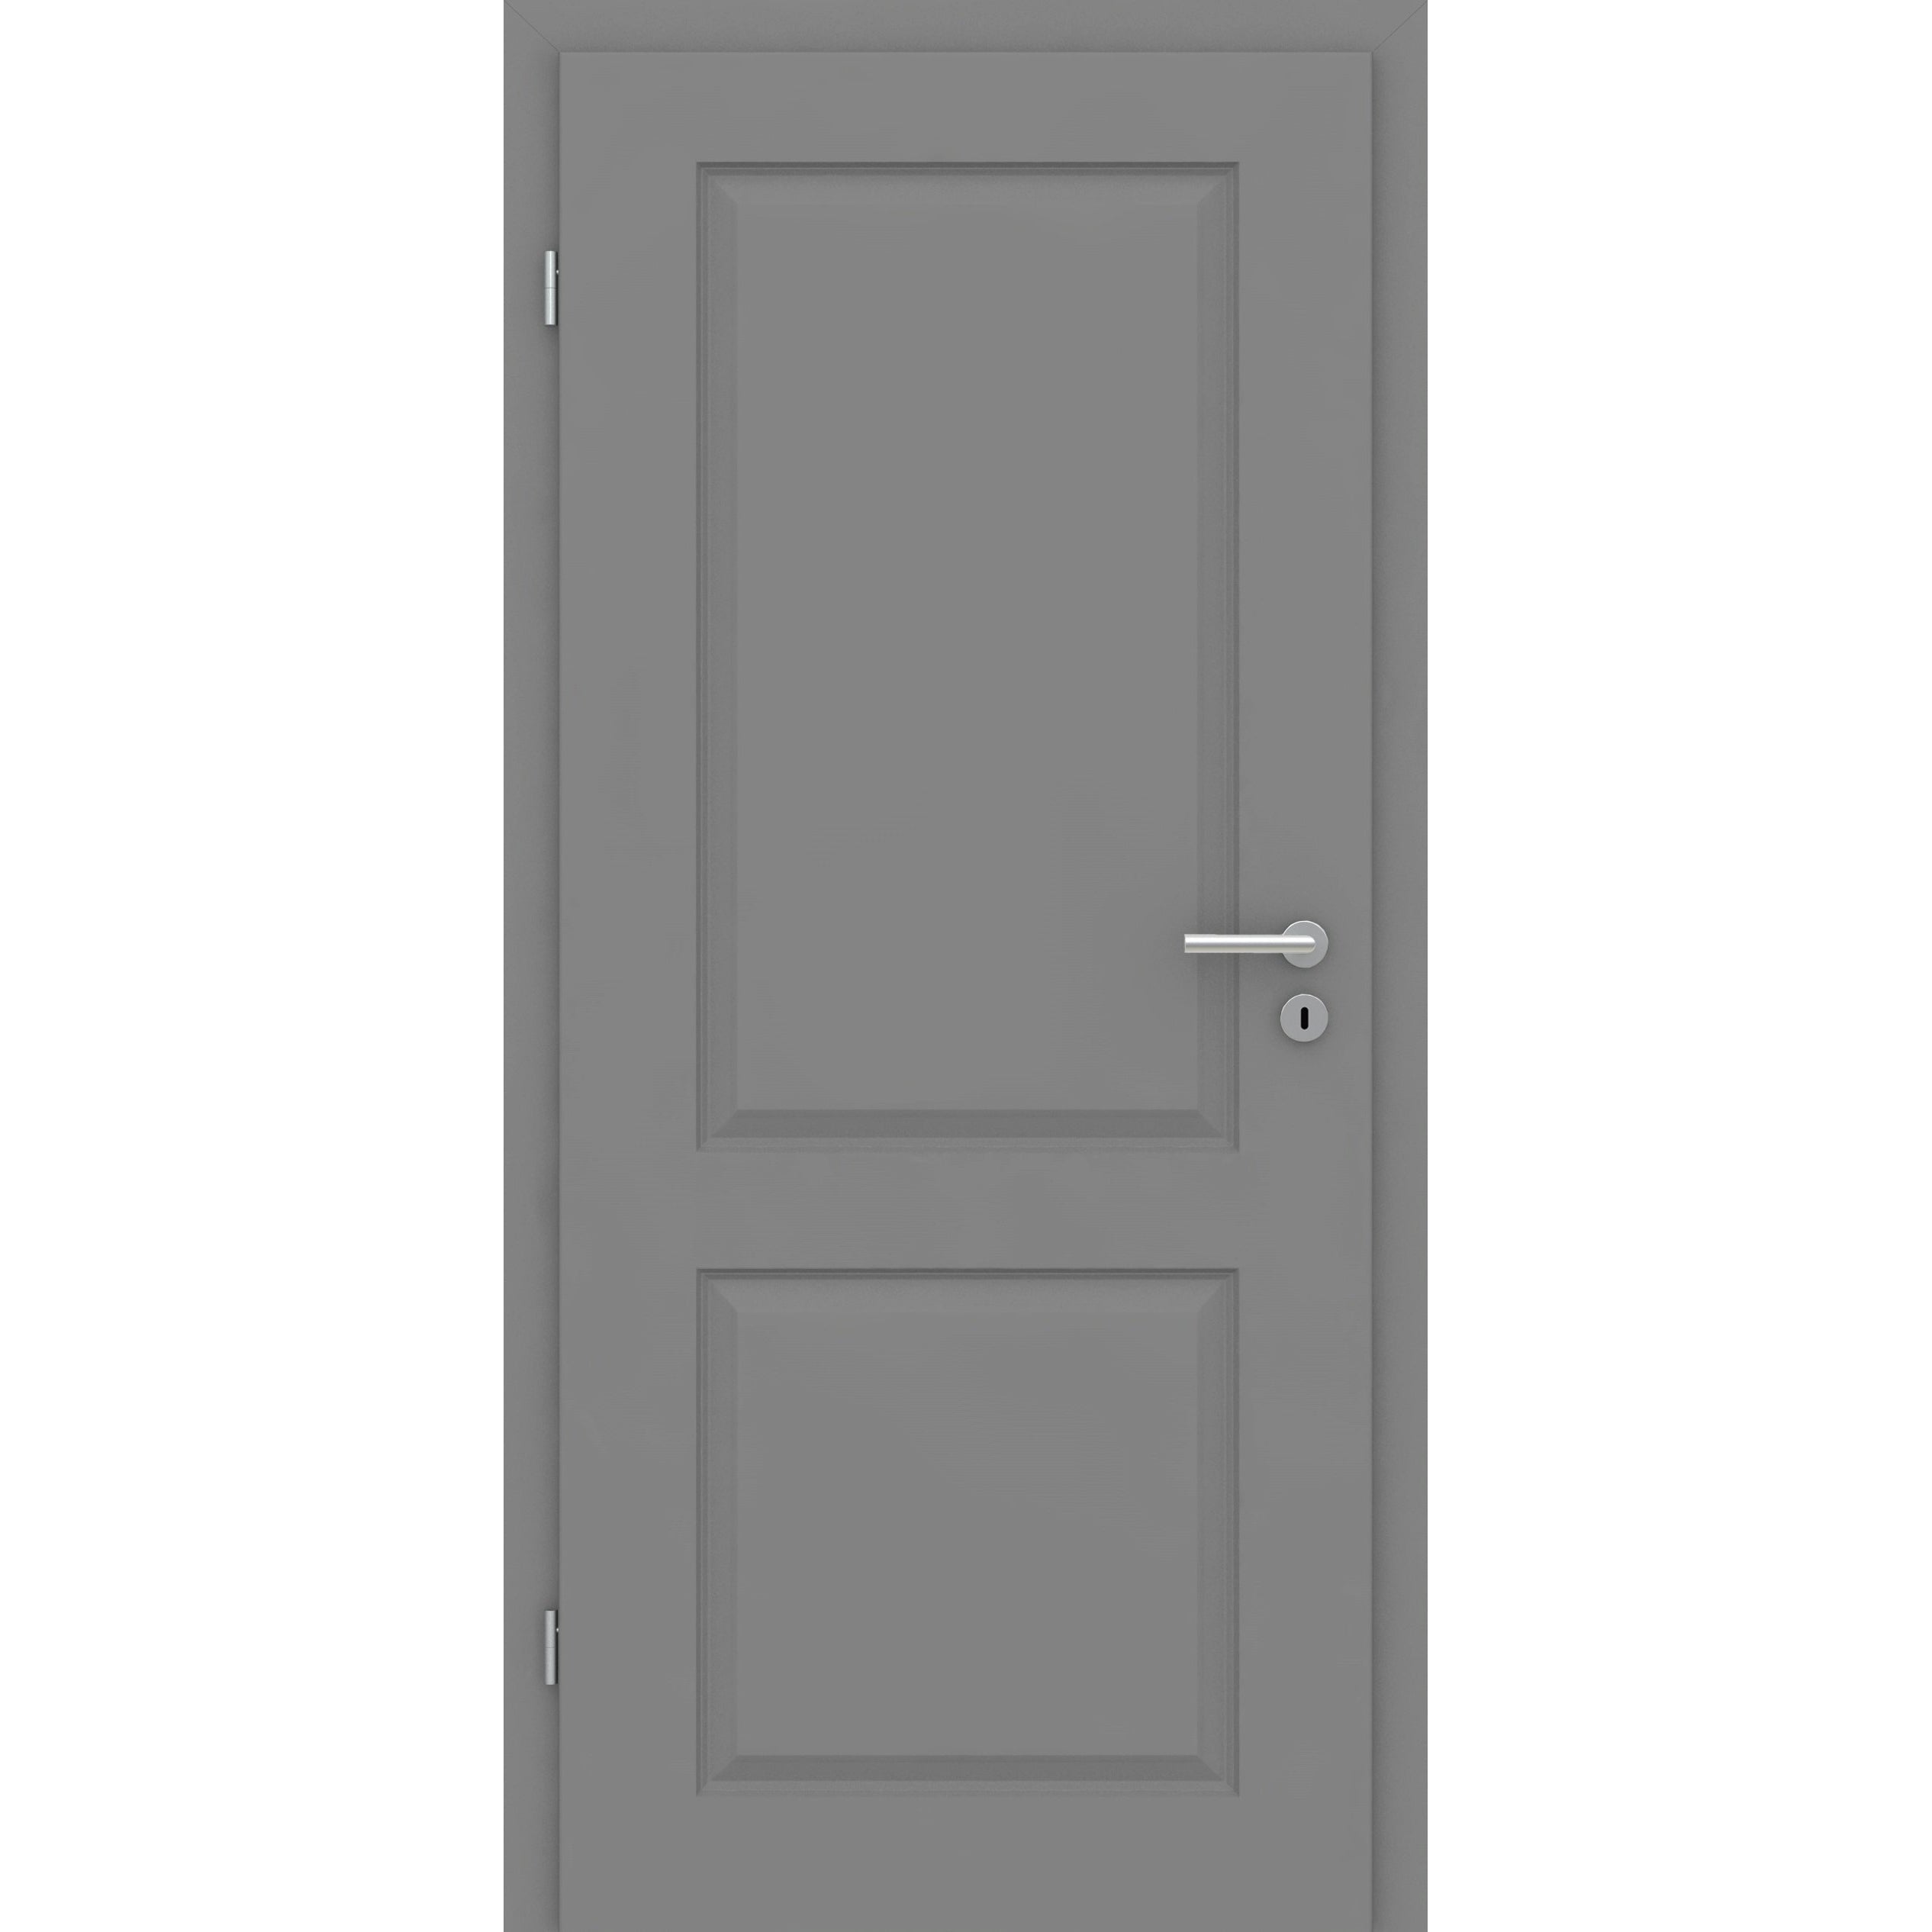 Wohnungseingangstür mit Zarge grau 2 Kassetten Designkante SK1 / KK3 - Modell Stiltür K27